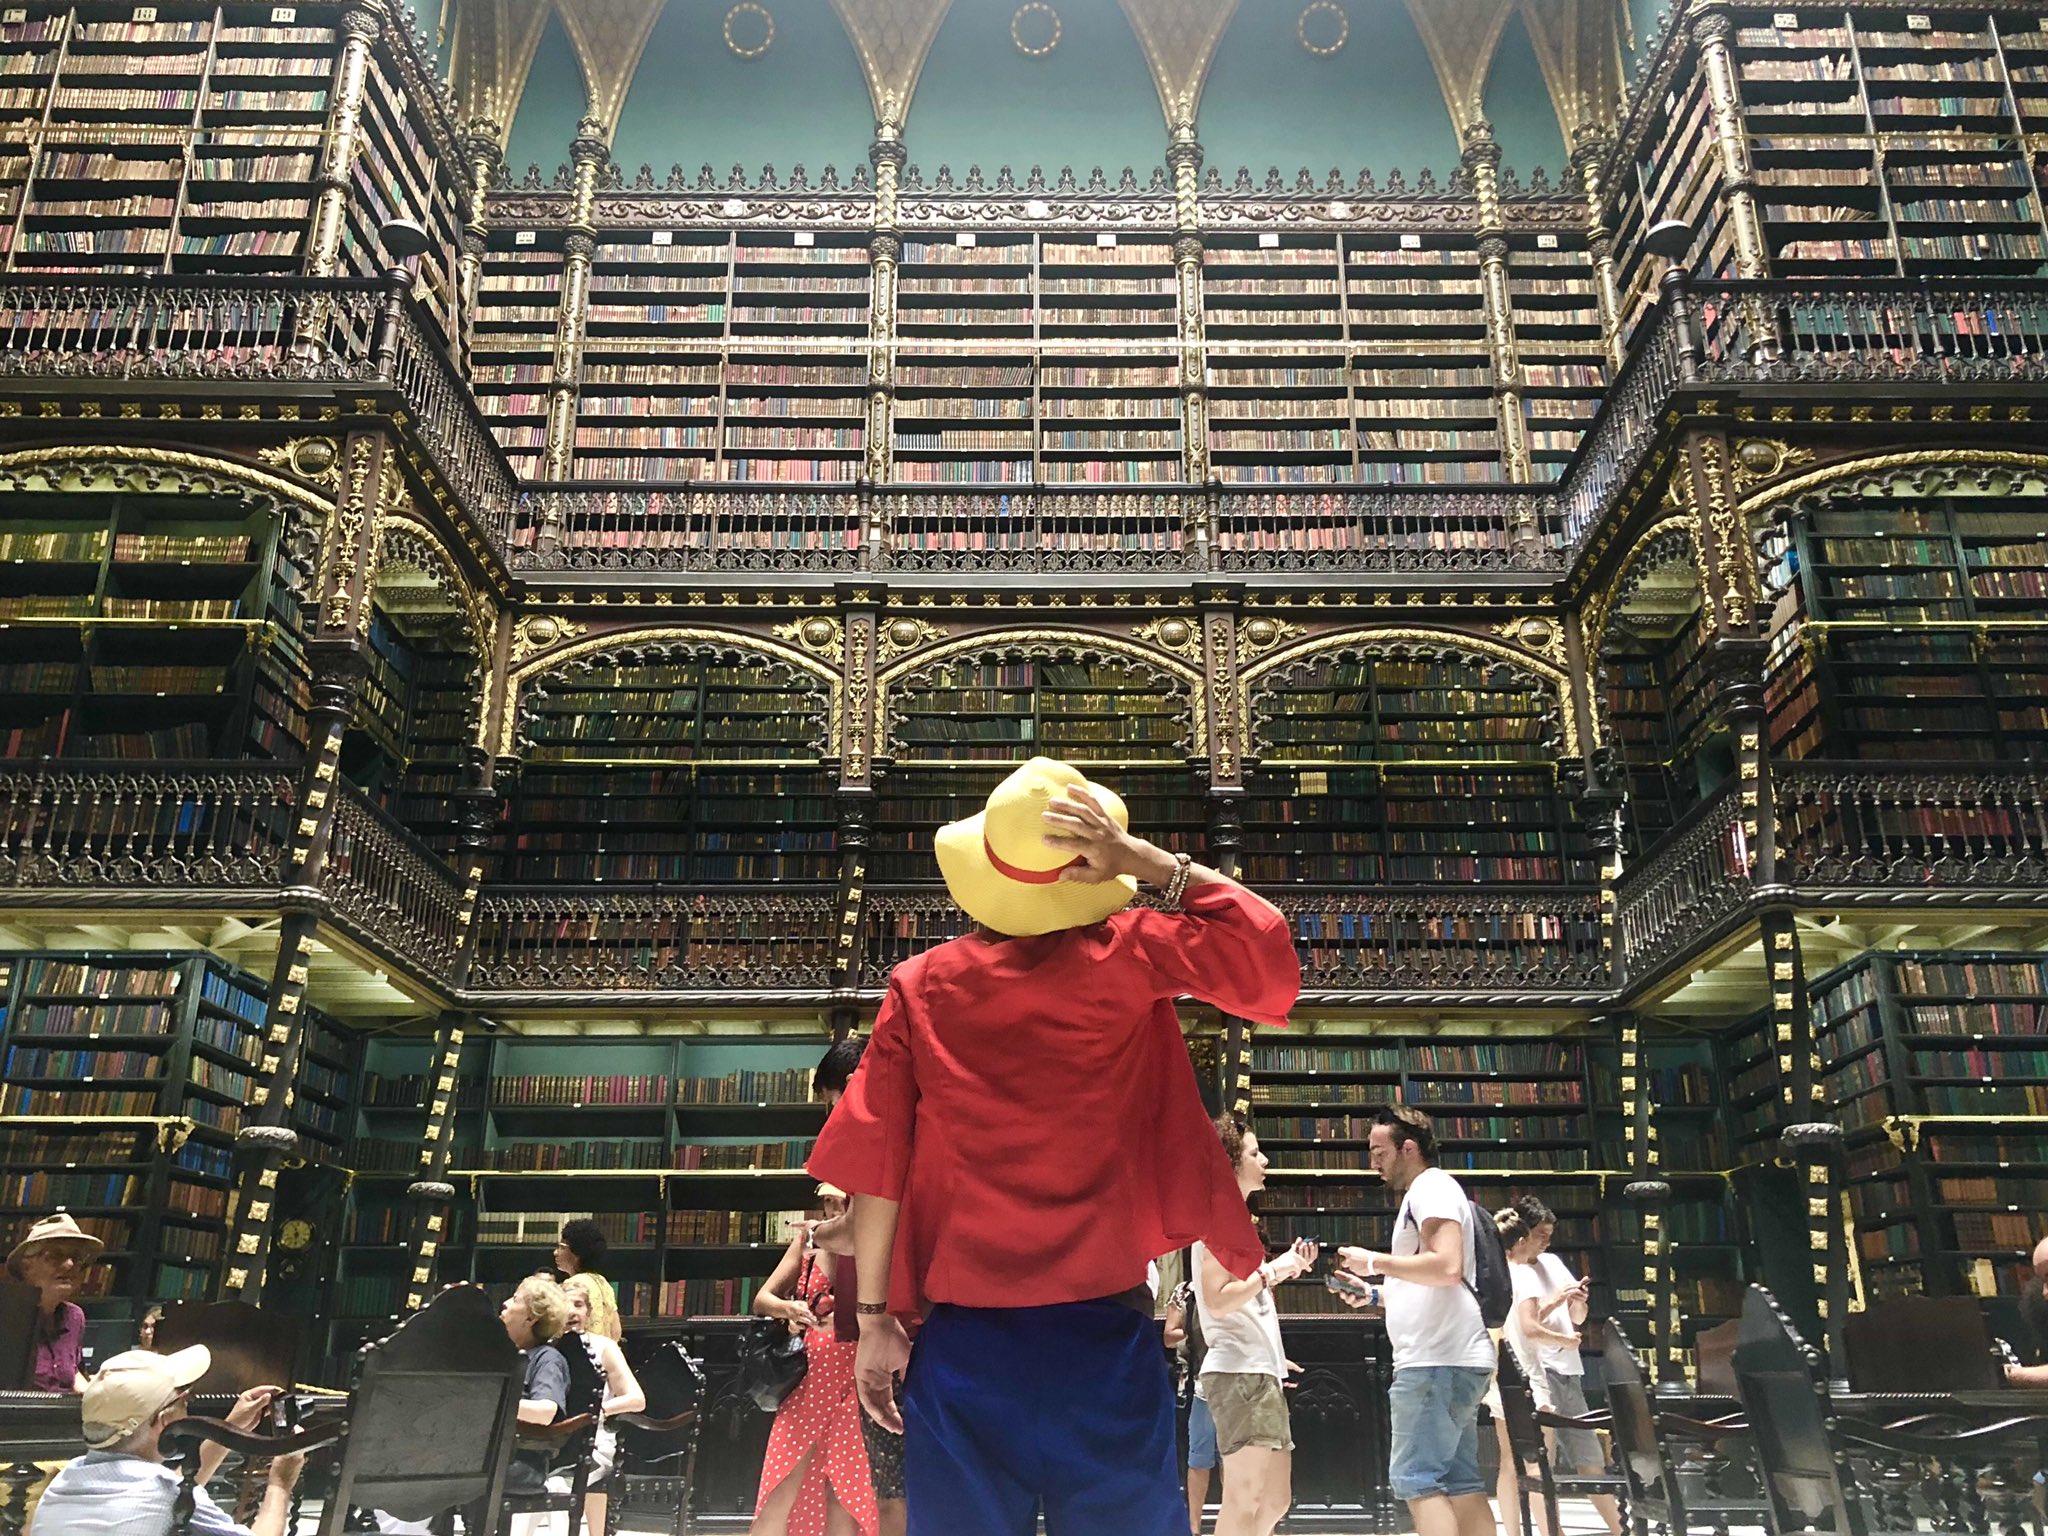 たかみー リオデジャネイロの幻想図書館 ハリーポッターのワンシーンに登場してきそうな図書館 クラシカルな空間に35万冊以上の古書が並んでいます ここの本は触れることすら許されないという不思議な図書館 正式名称は王立ポルトガル図書館 世界一周